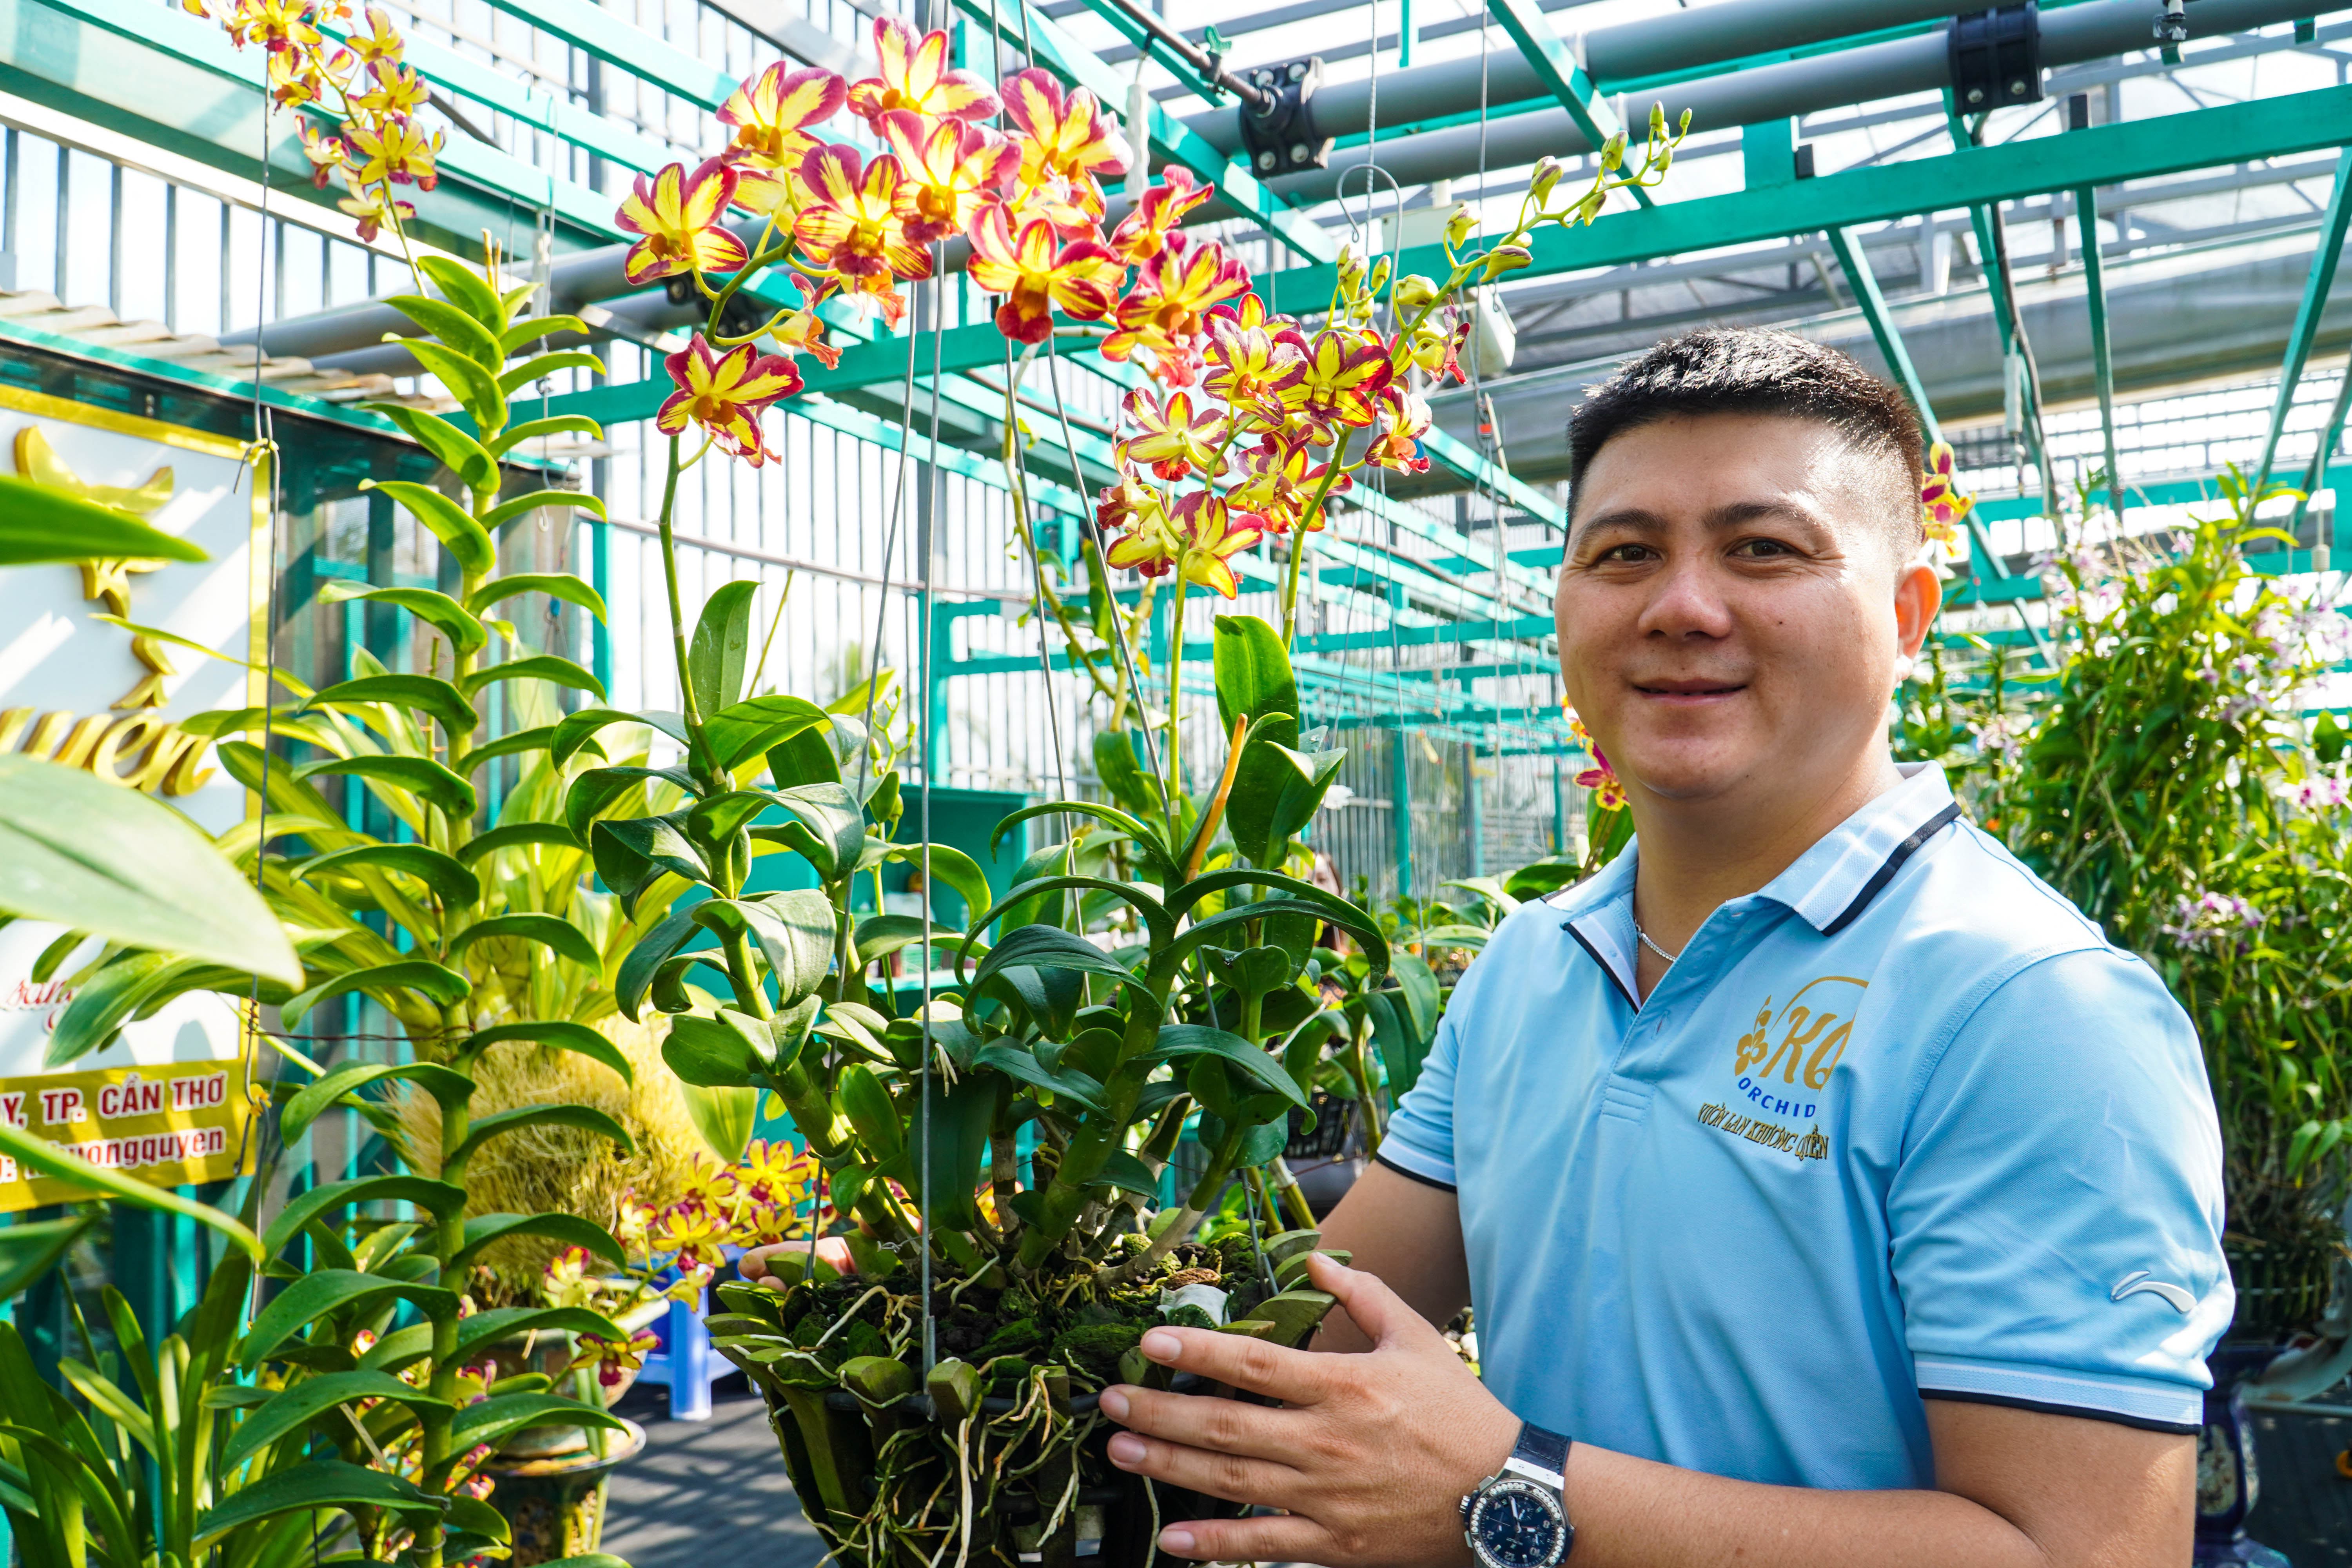 Hiện anh Quyền đang sở hữu khoảng 5.000 chậu hoa lan với hơn 50 loài từ lan rừng truyền thống, lan hồ điệp cho đến các dòng lan Dendro đang có sức hút cao trên thị trường. Ảnh: Kim Anh.